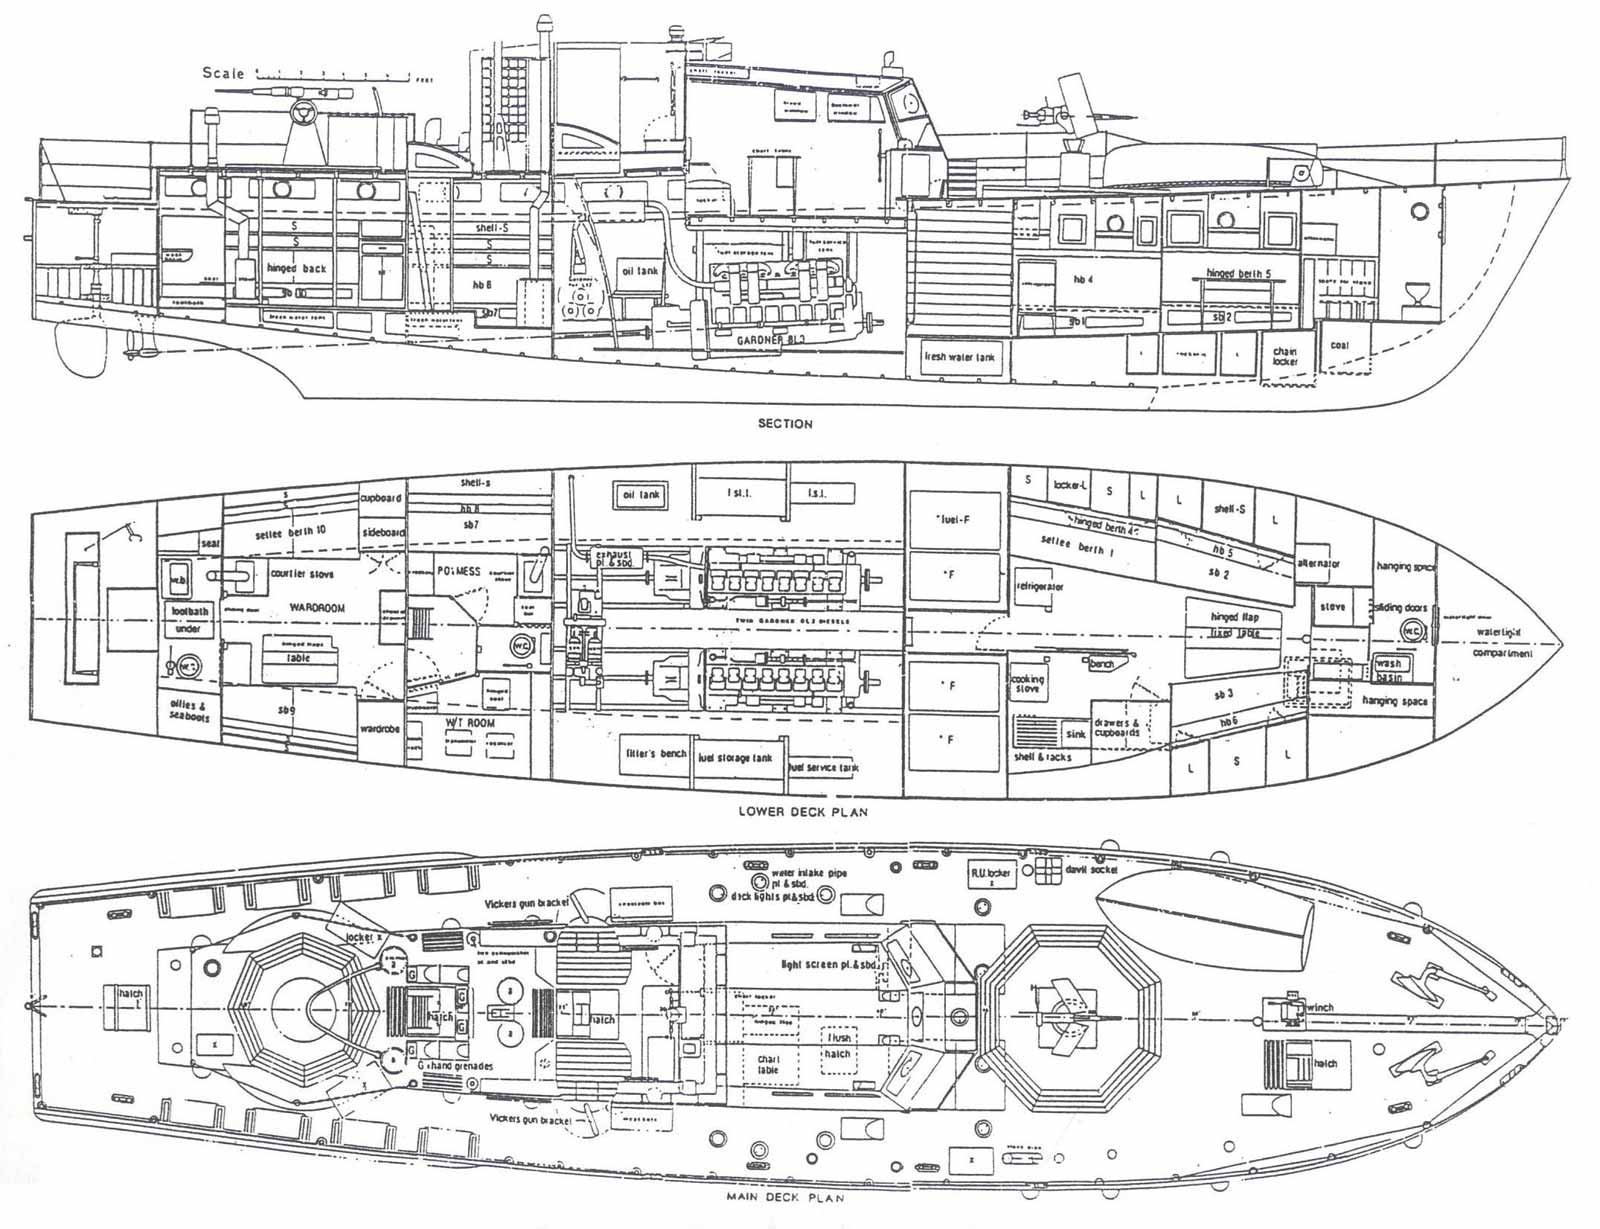 Hull Drawings: Sailboat Hull Design Drawing, Small Boat Plans Free 